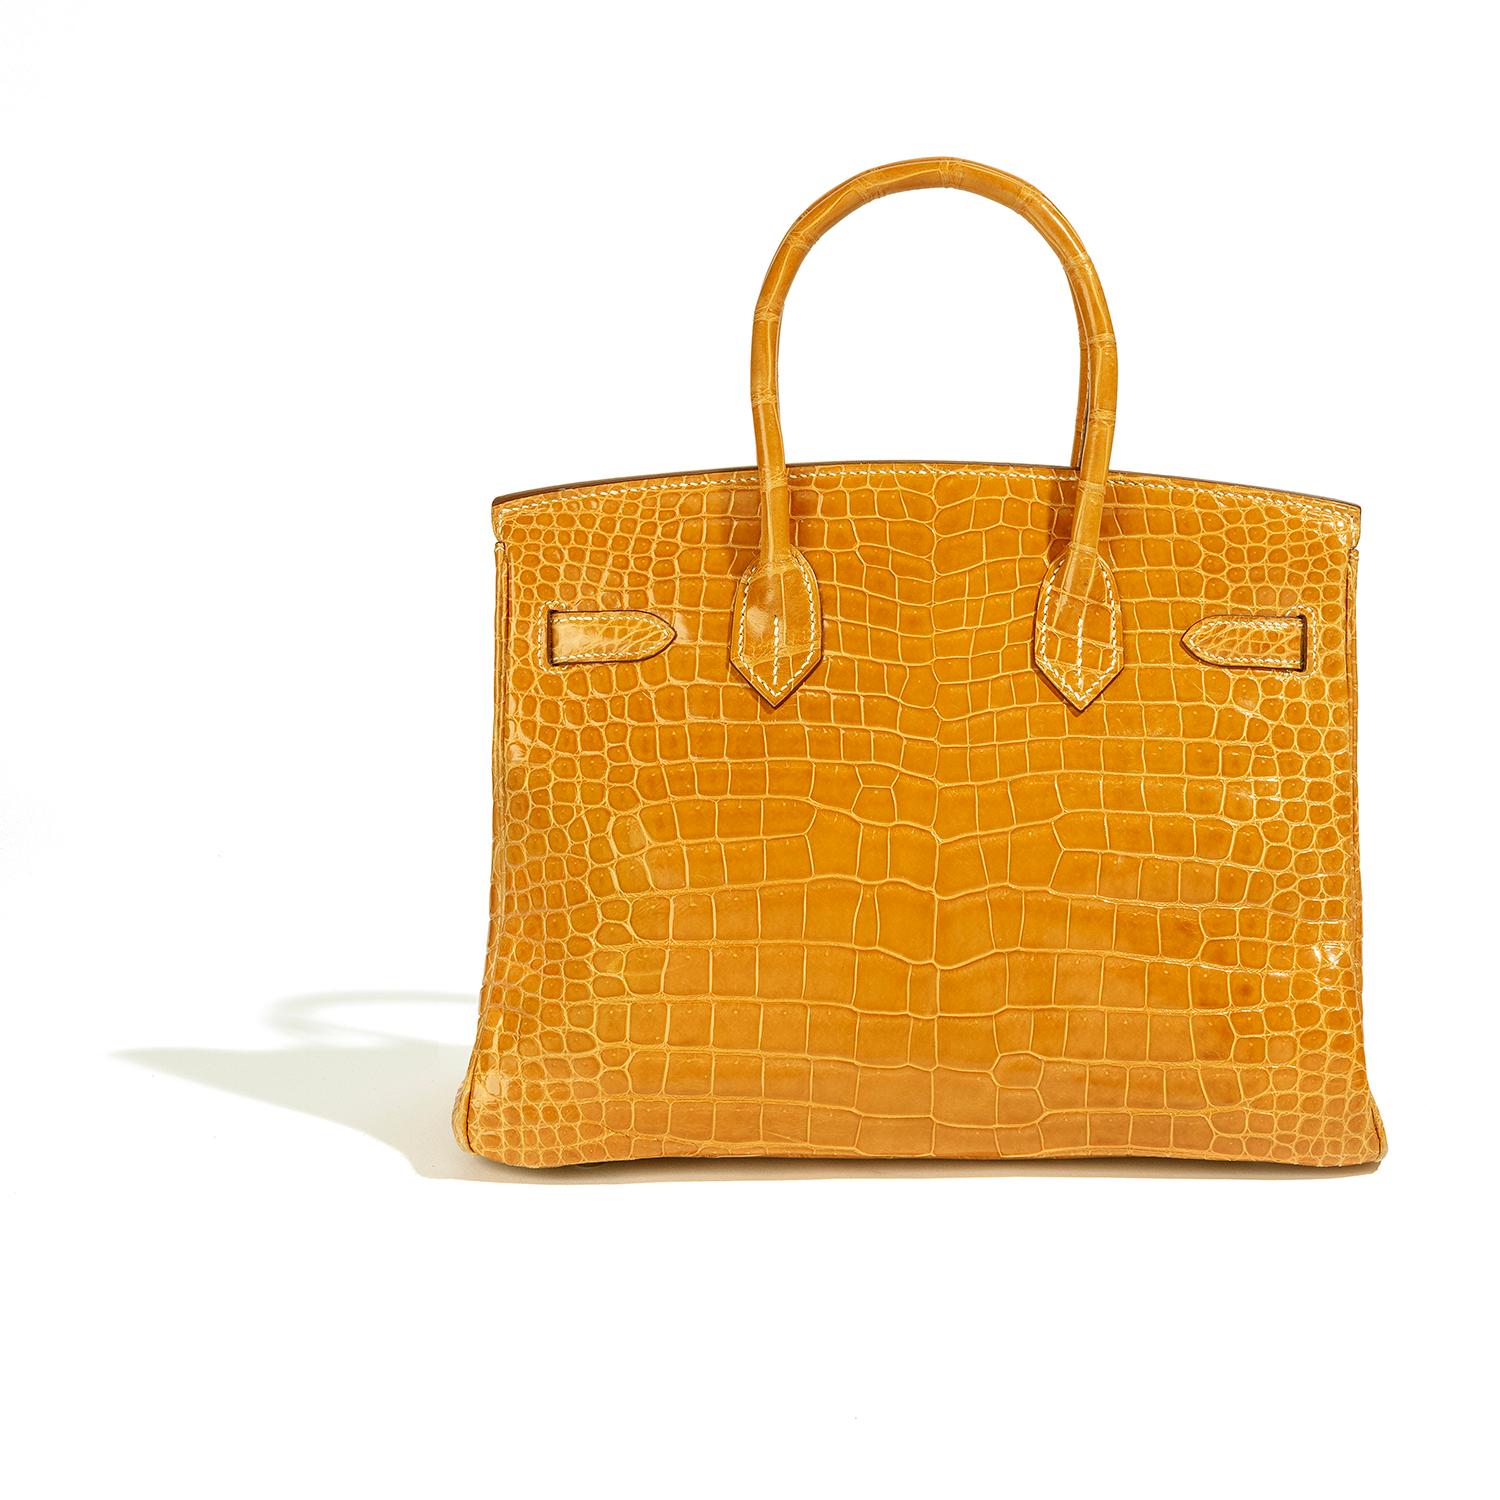 Ce sac exquis Hermès est une véritable œuvre d'art, confectionné dans un cuir jaune de la plus haute qualité et orné d'une quincaillerie en or blanc incrustée de diamants à couper le souffle. Le fermoir en diamant doré, qui pèse 106,68 g d'or blanc